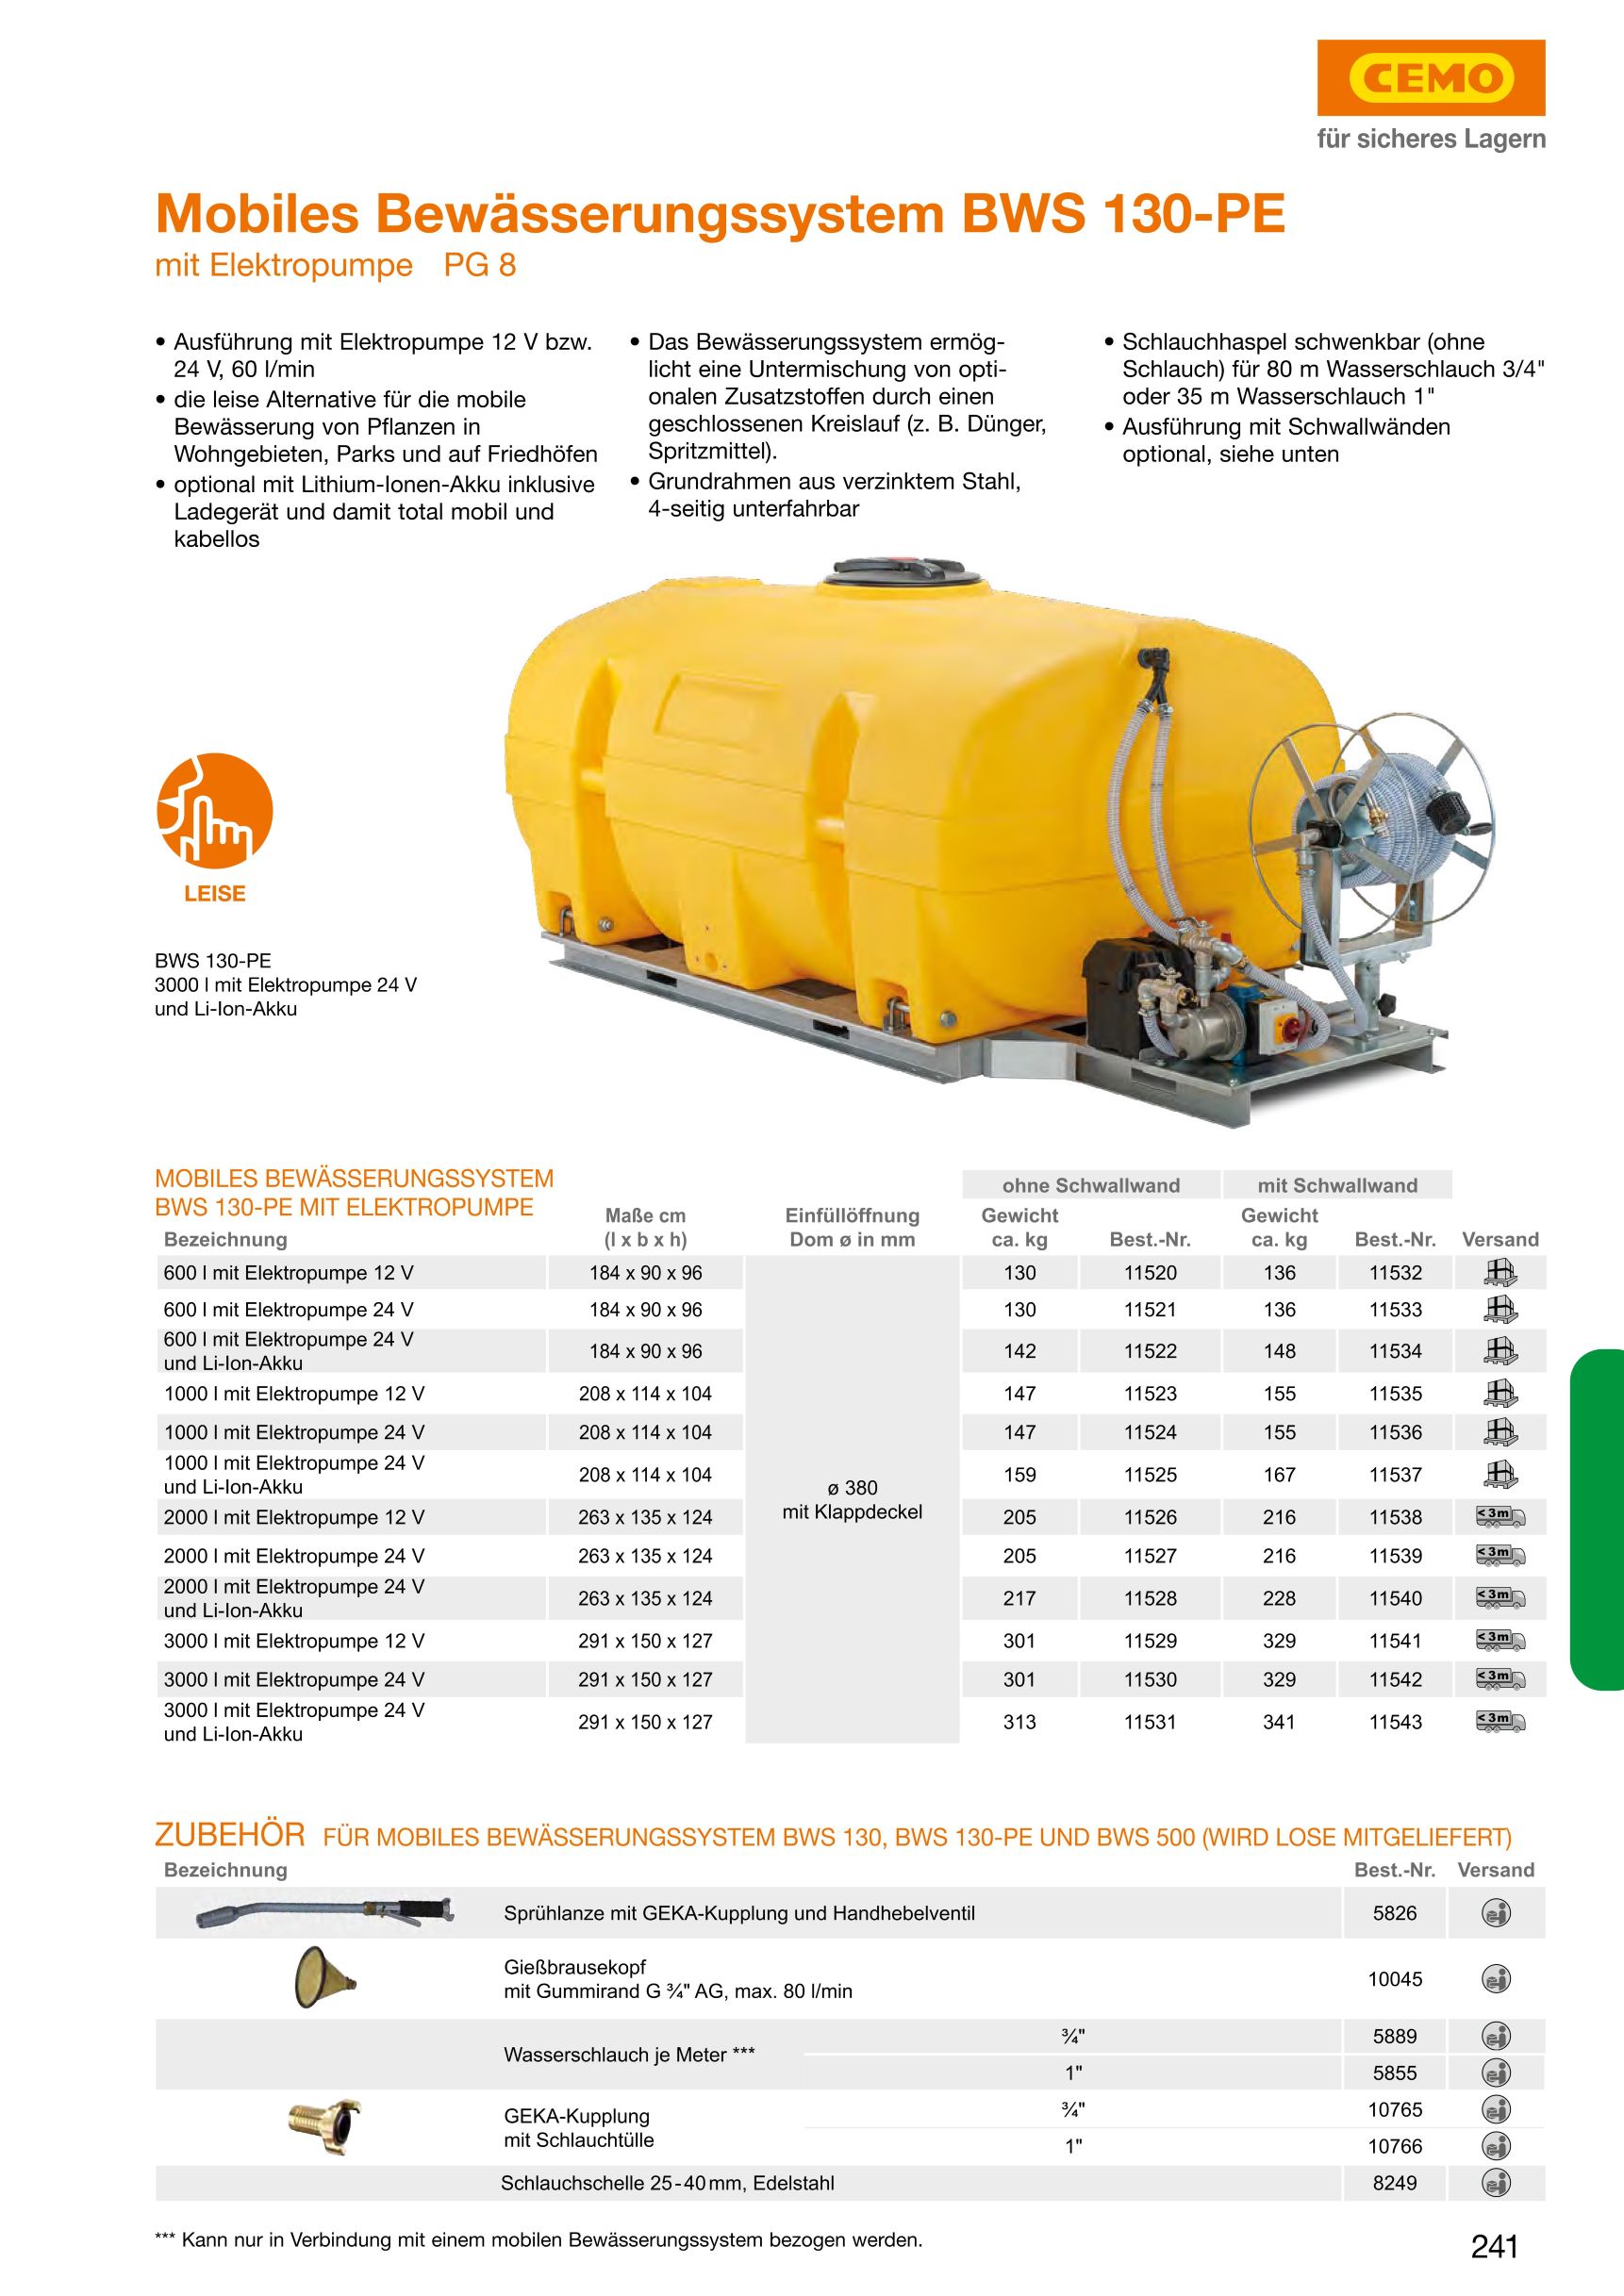 CEMO Mobiles Bewässerungssystem BWS 130-PE, 2000 l, 12 V Pumpe - 11526